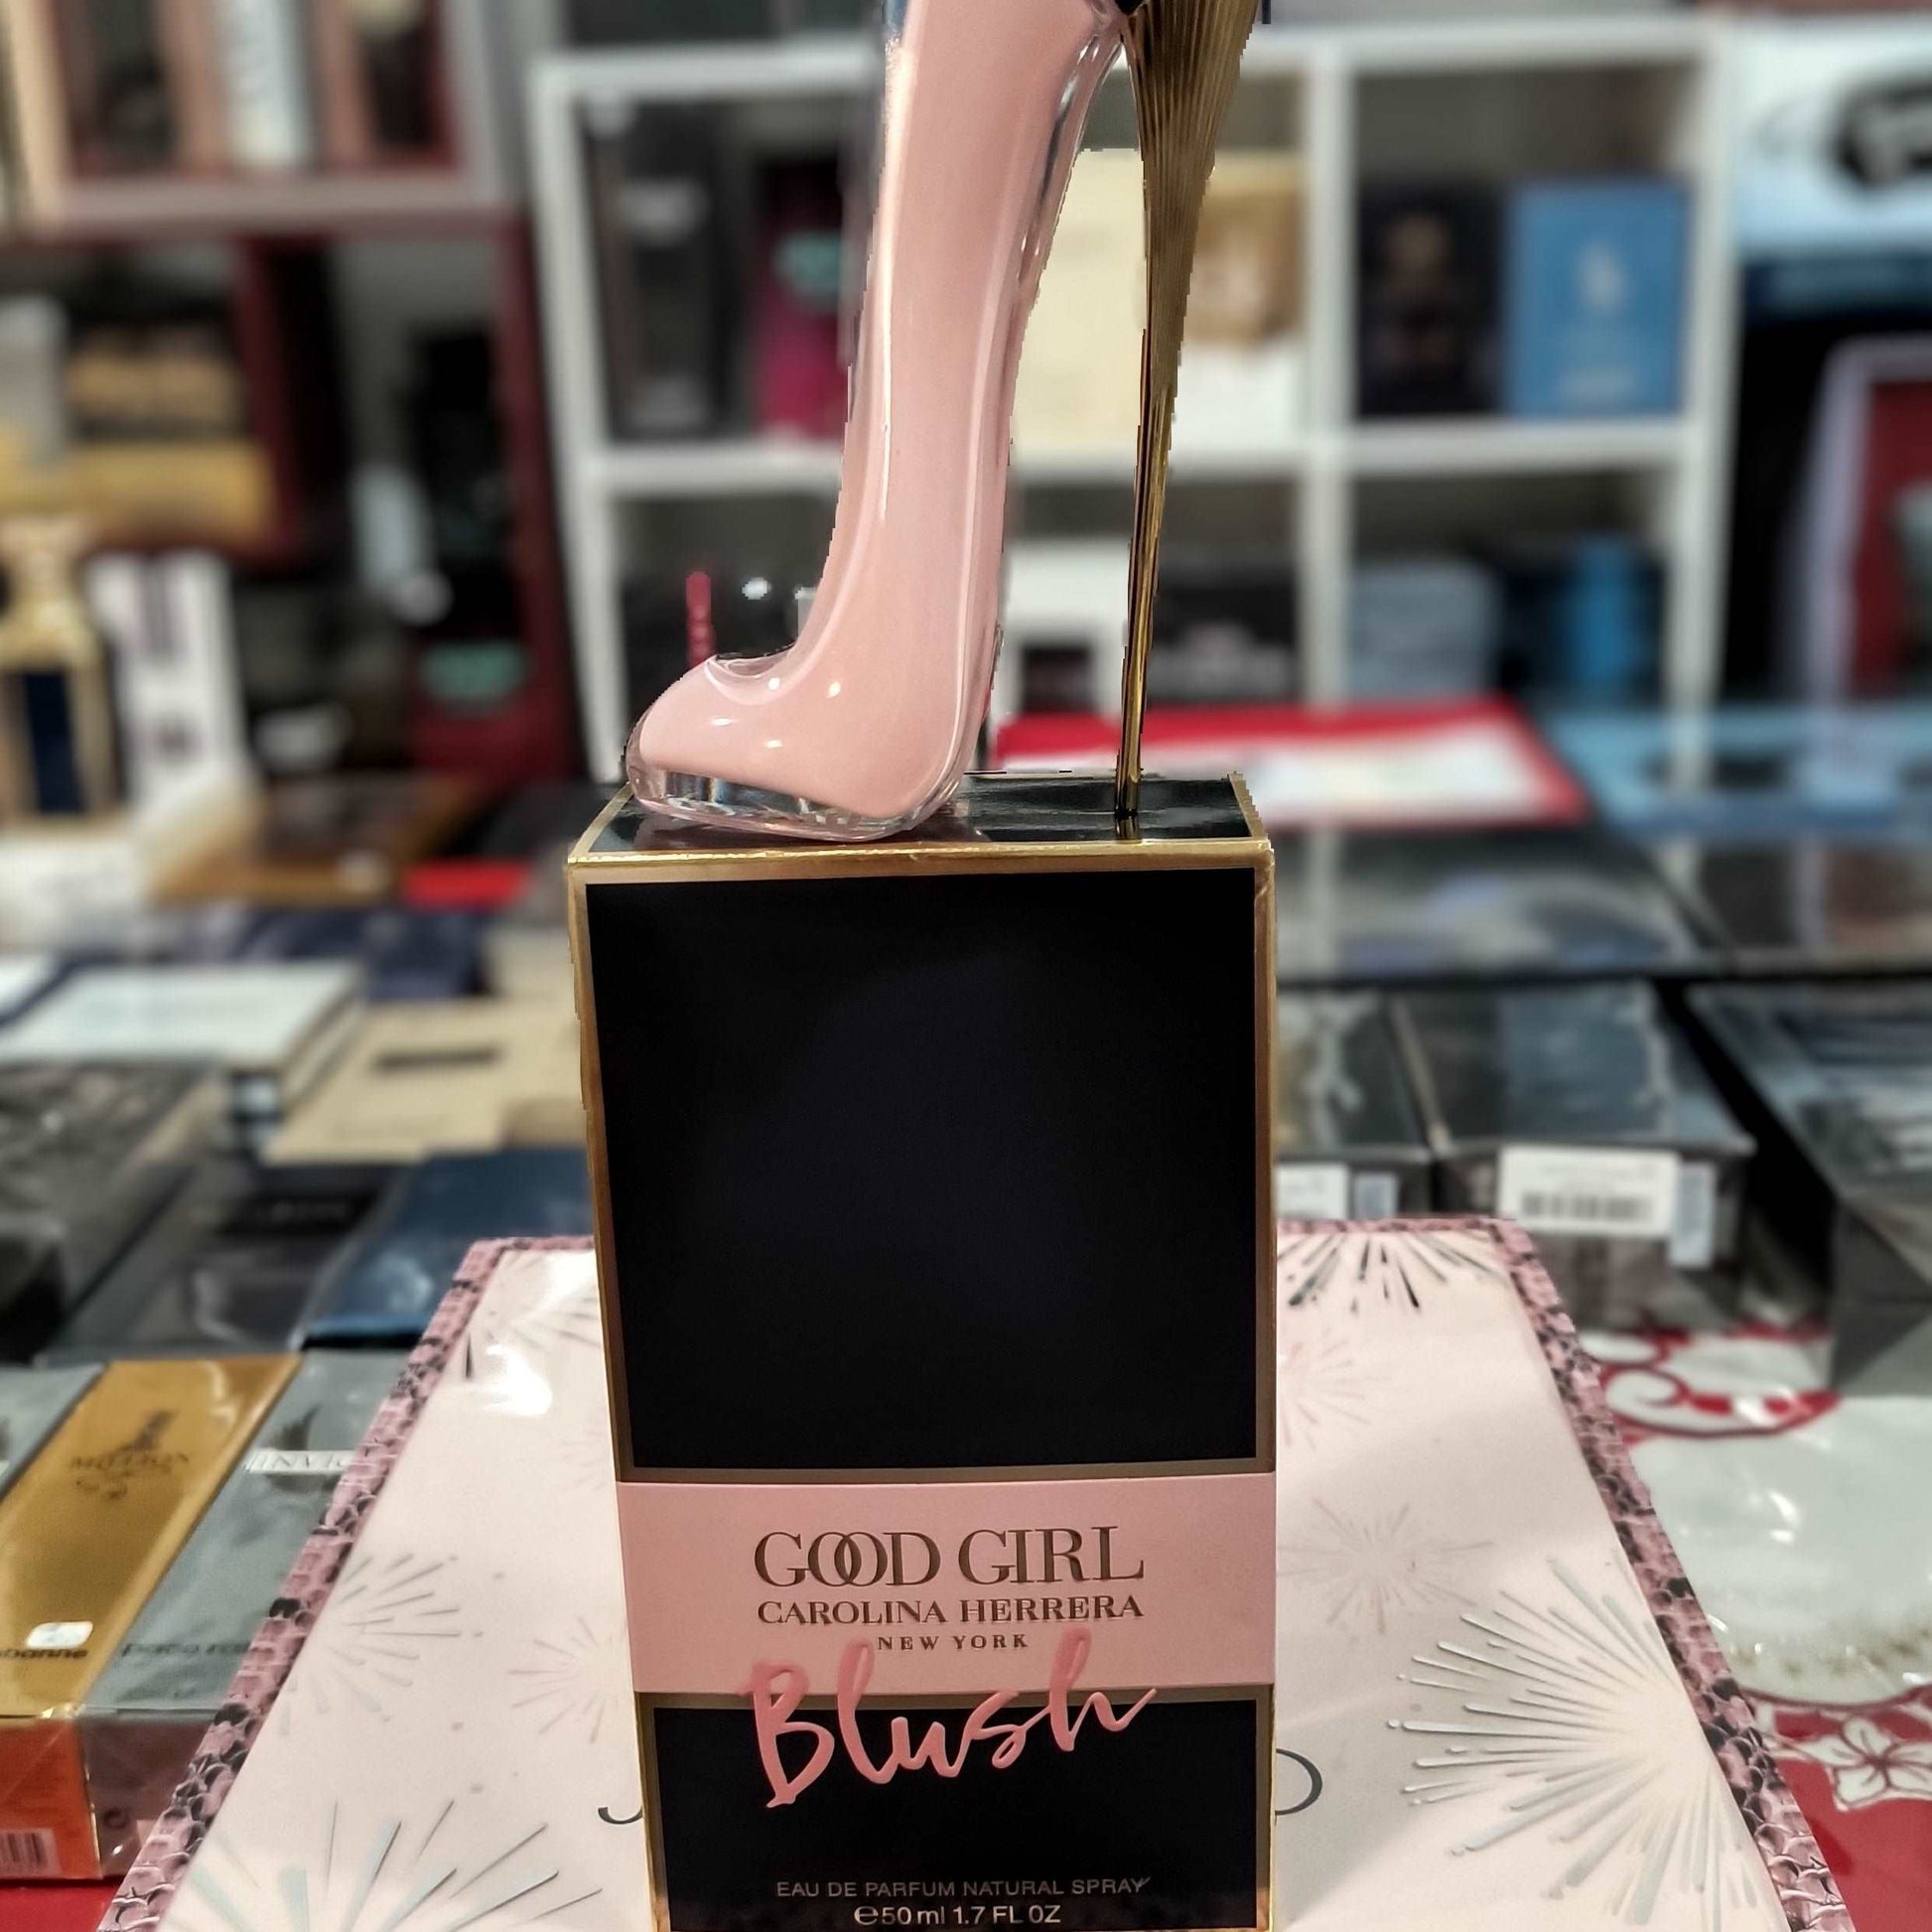 Good Girl Blush Carolina Herrera Eau de Parfum 2.7 fl oz